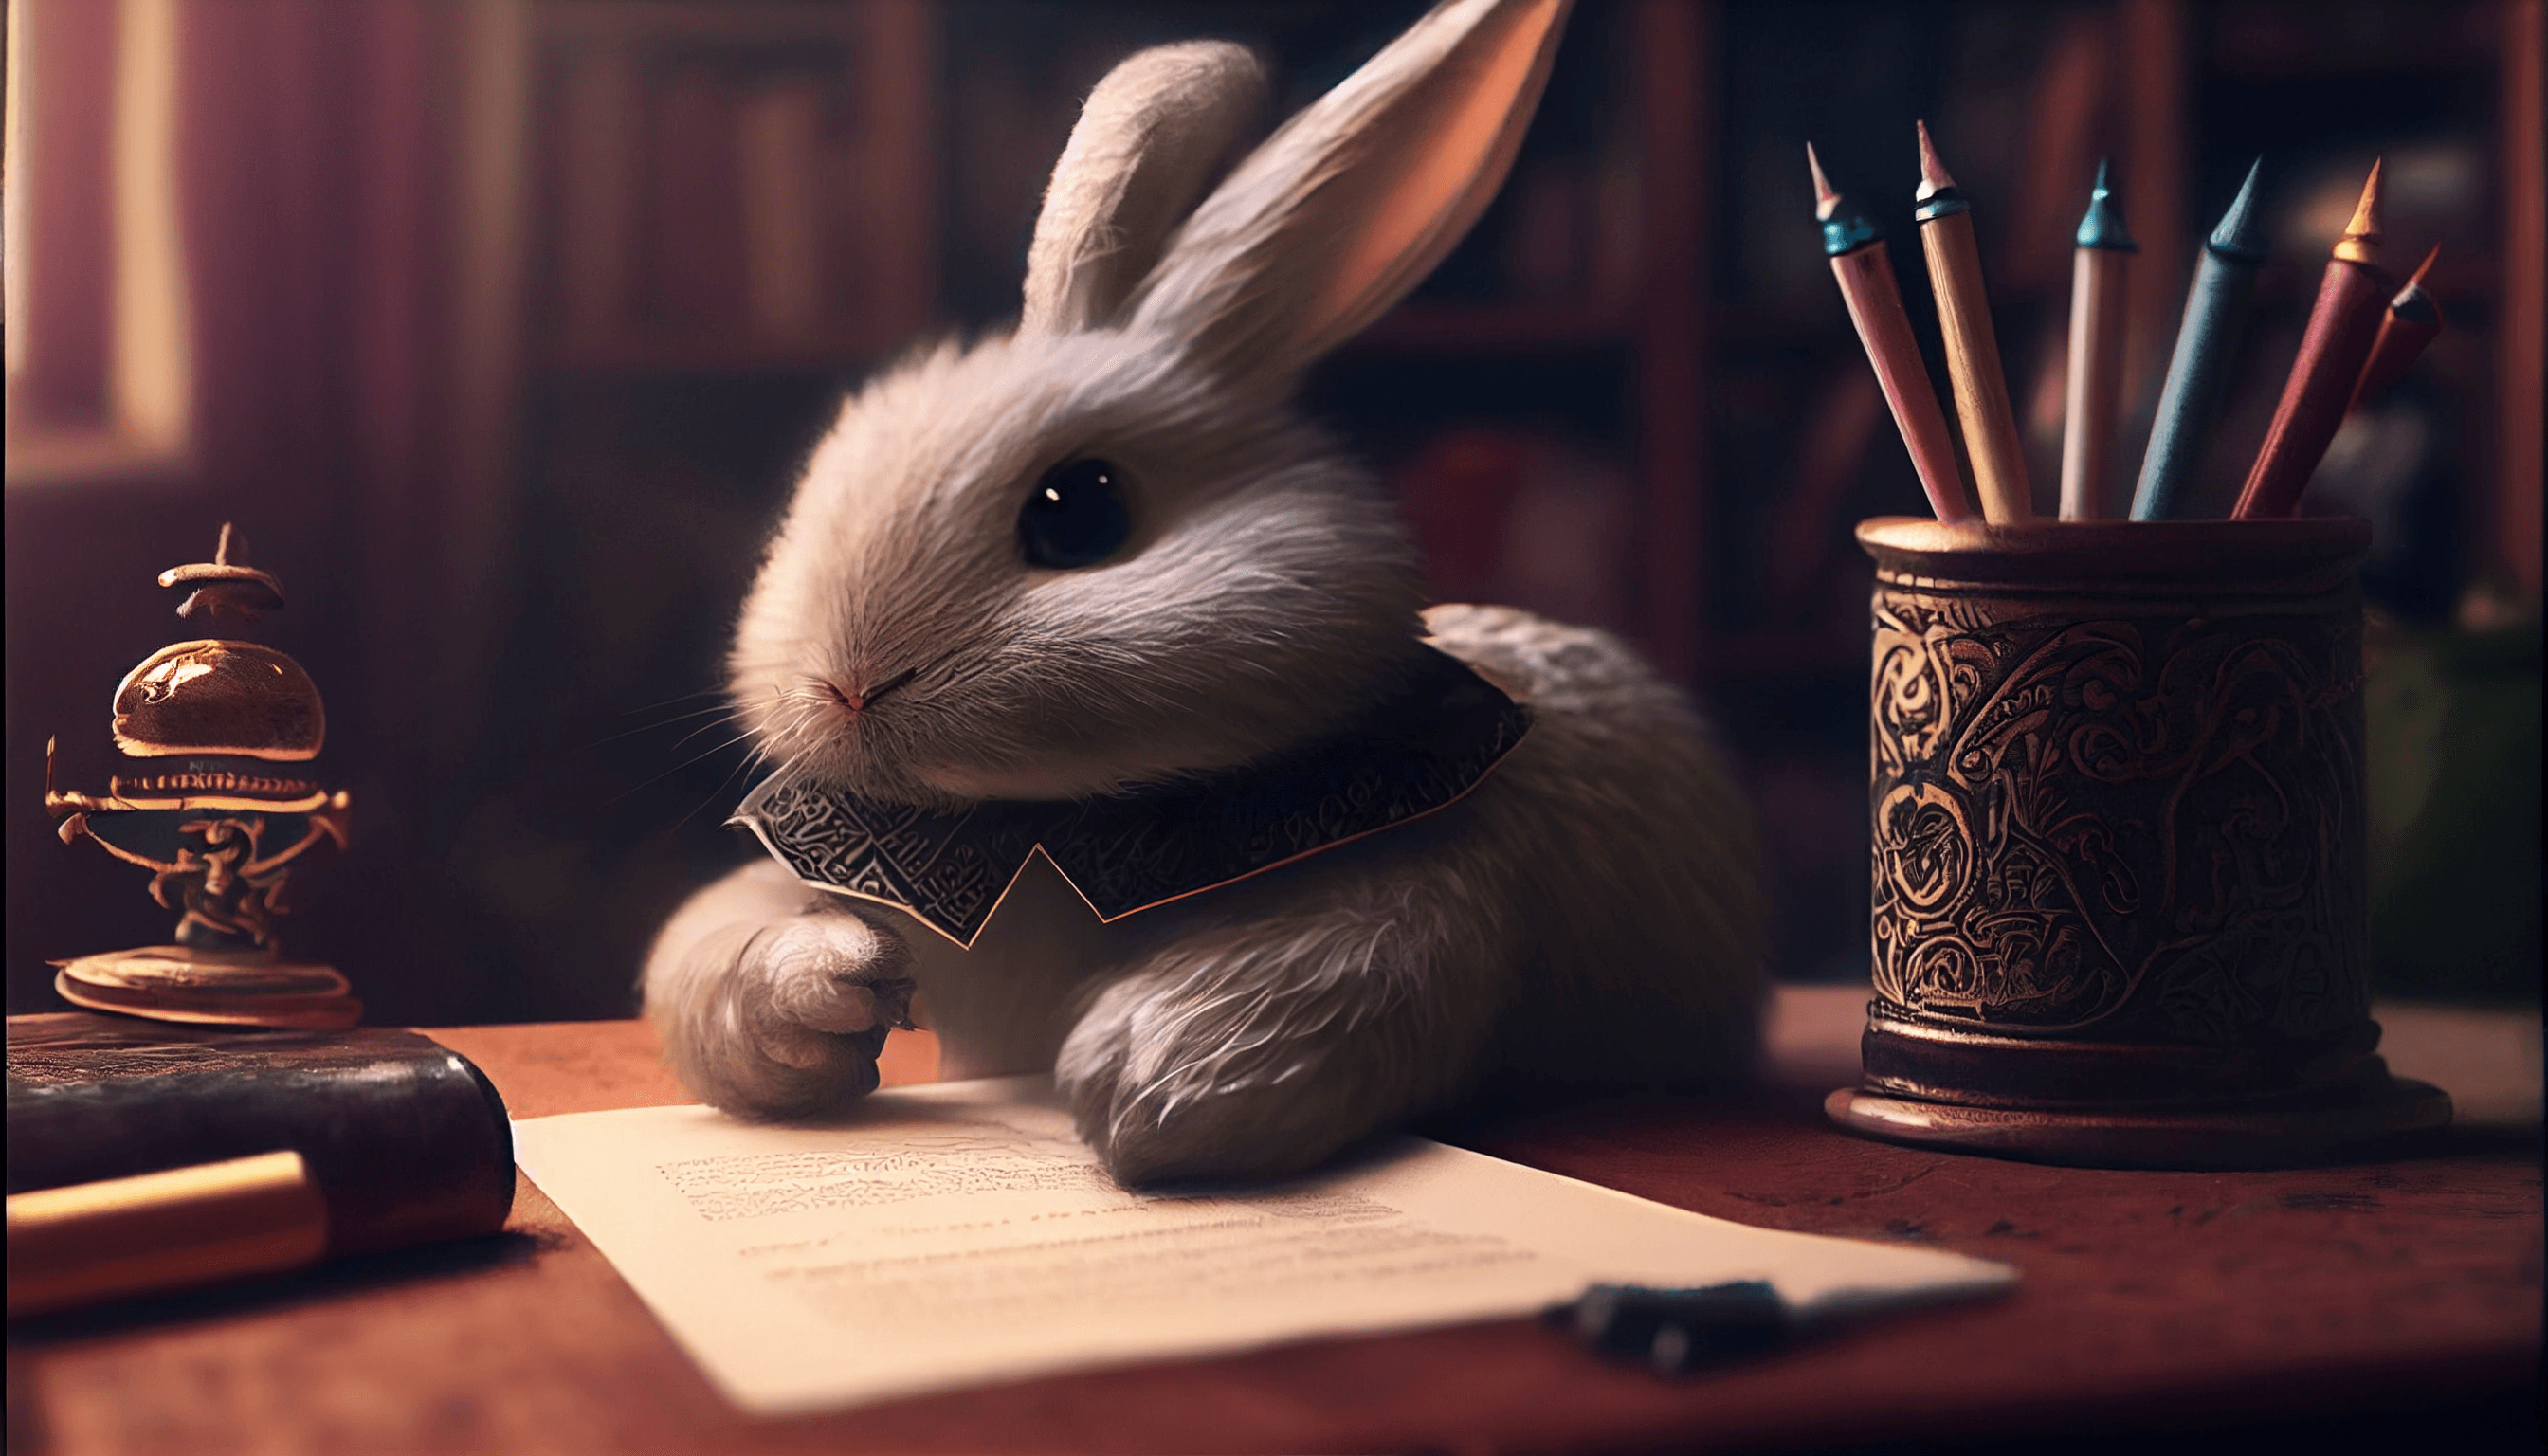 Web3-a-cute-fluffy-bunny-working